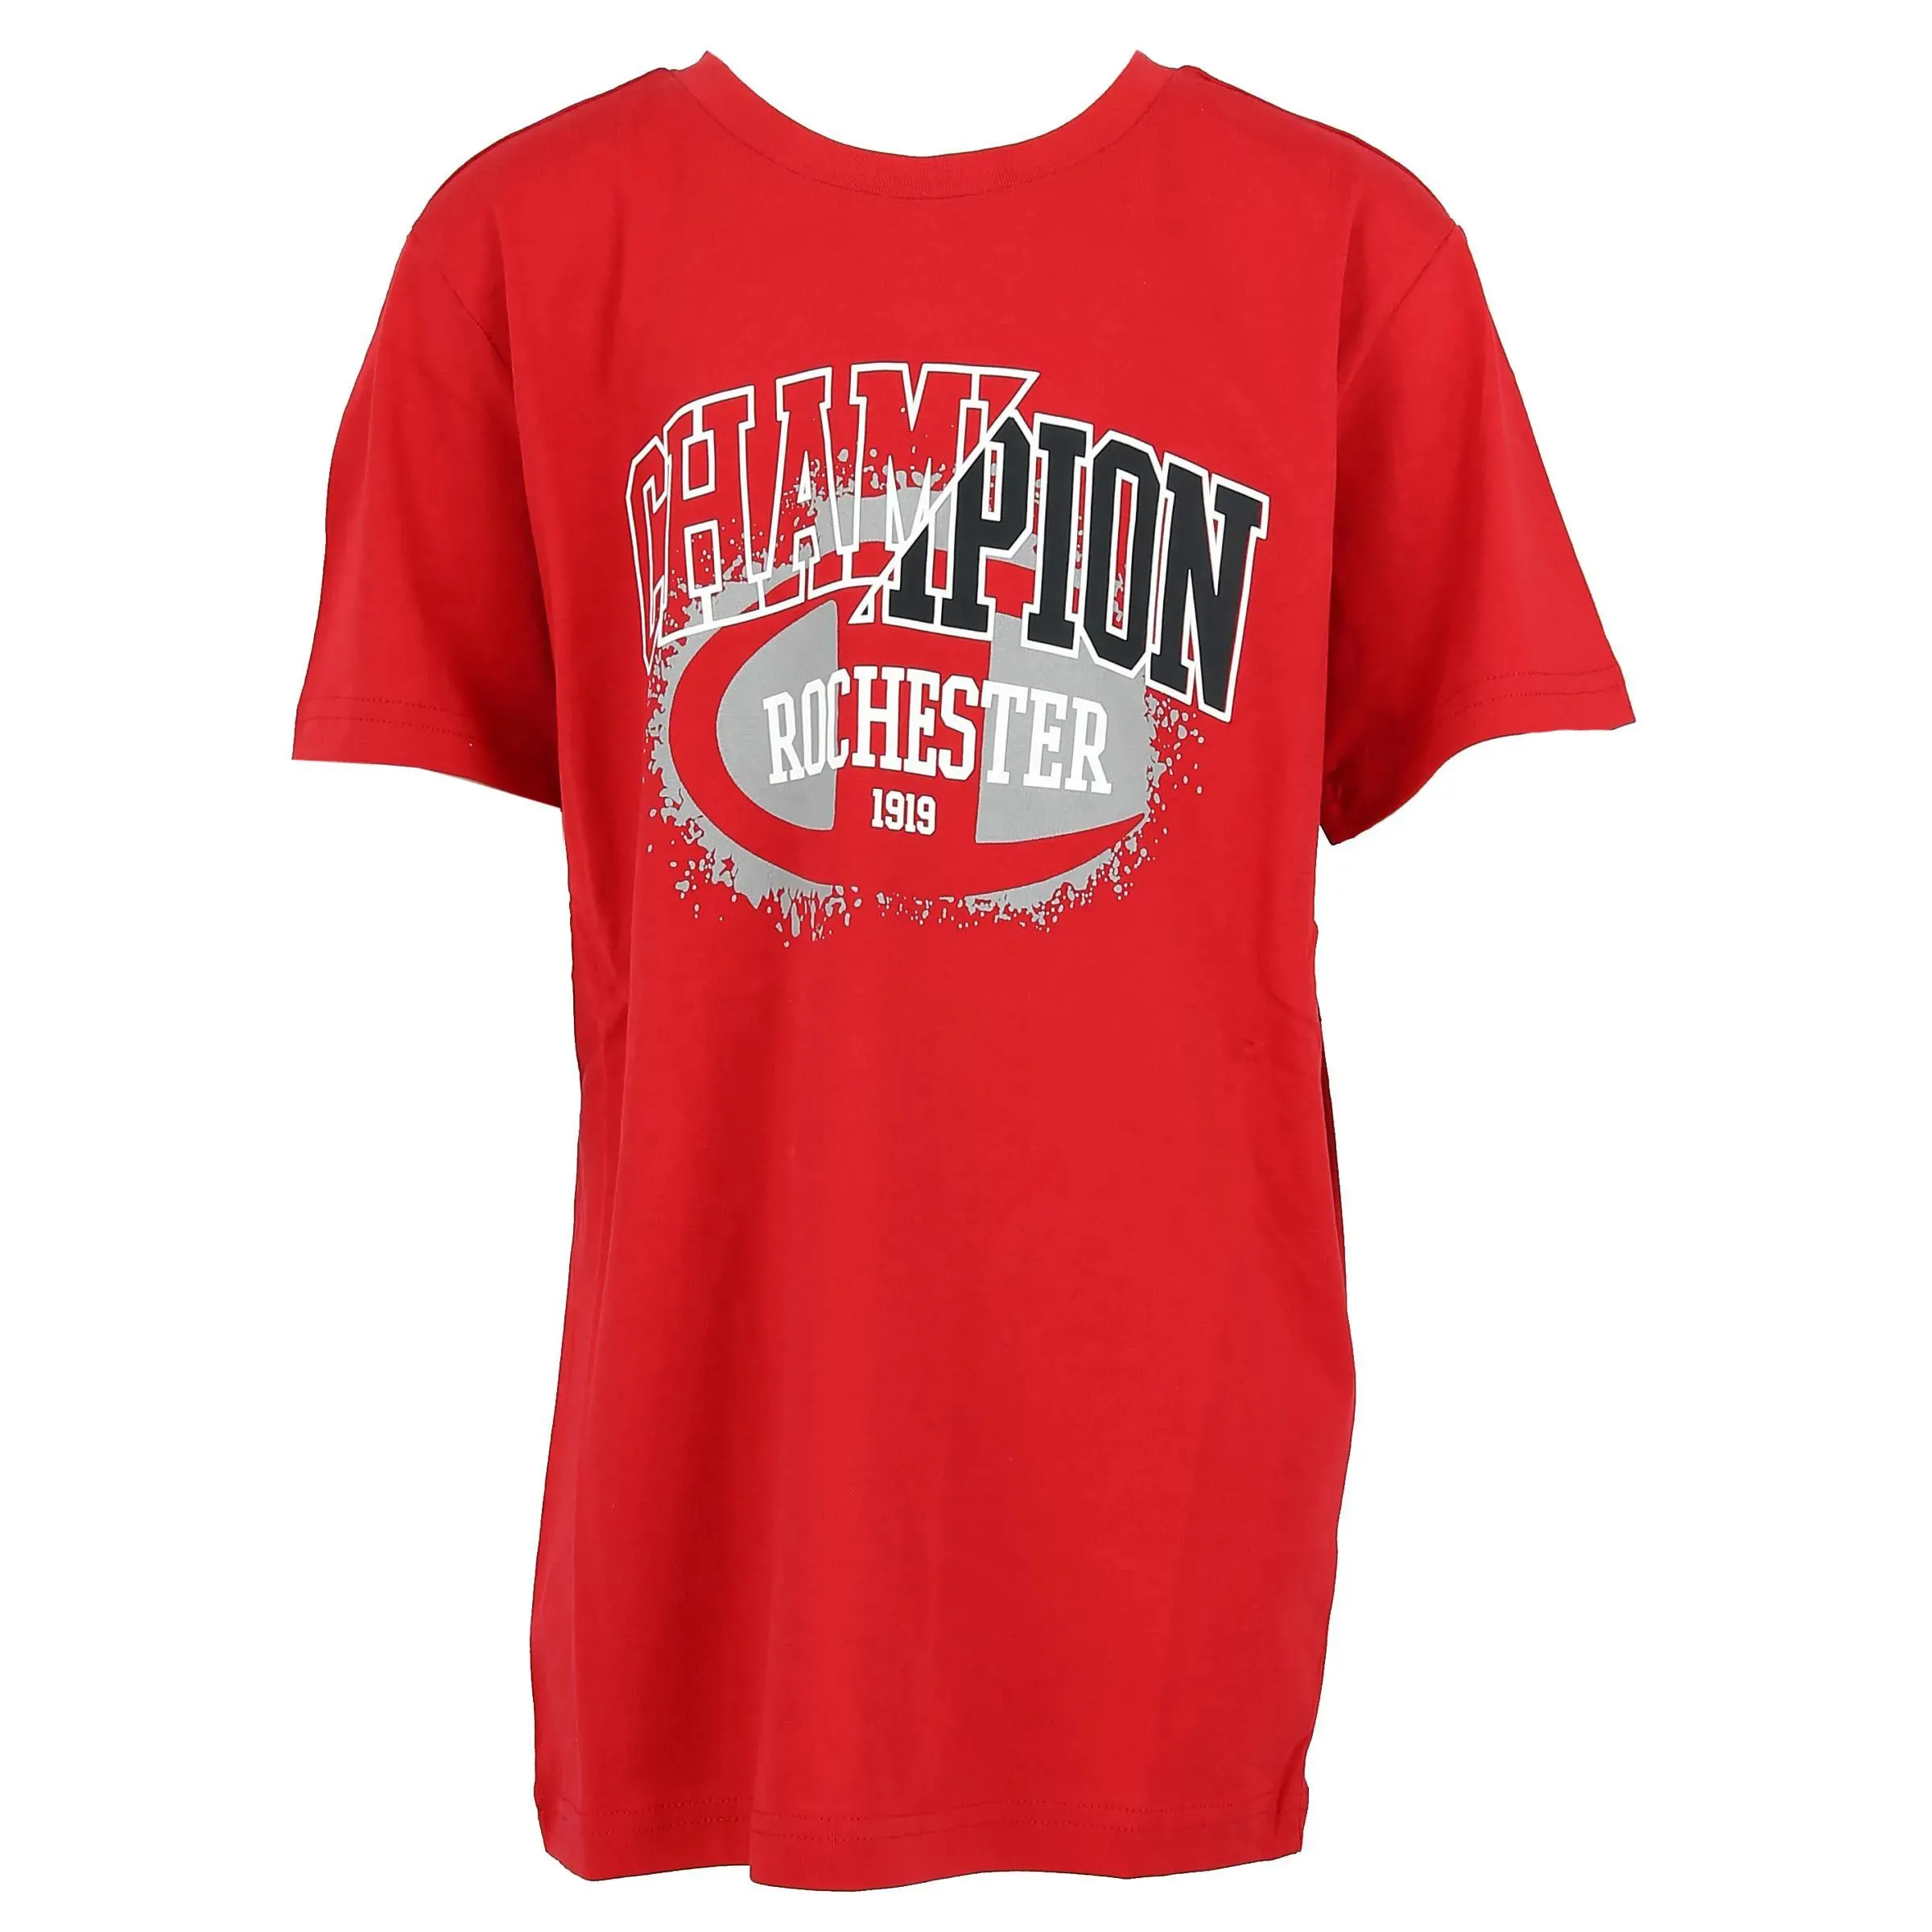 Champion T-shirt ROCHESTER T-SHIRT 